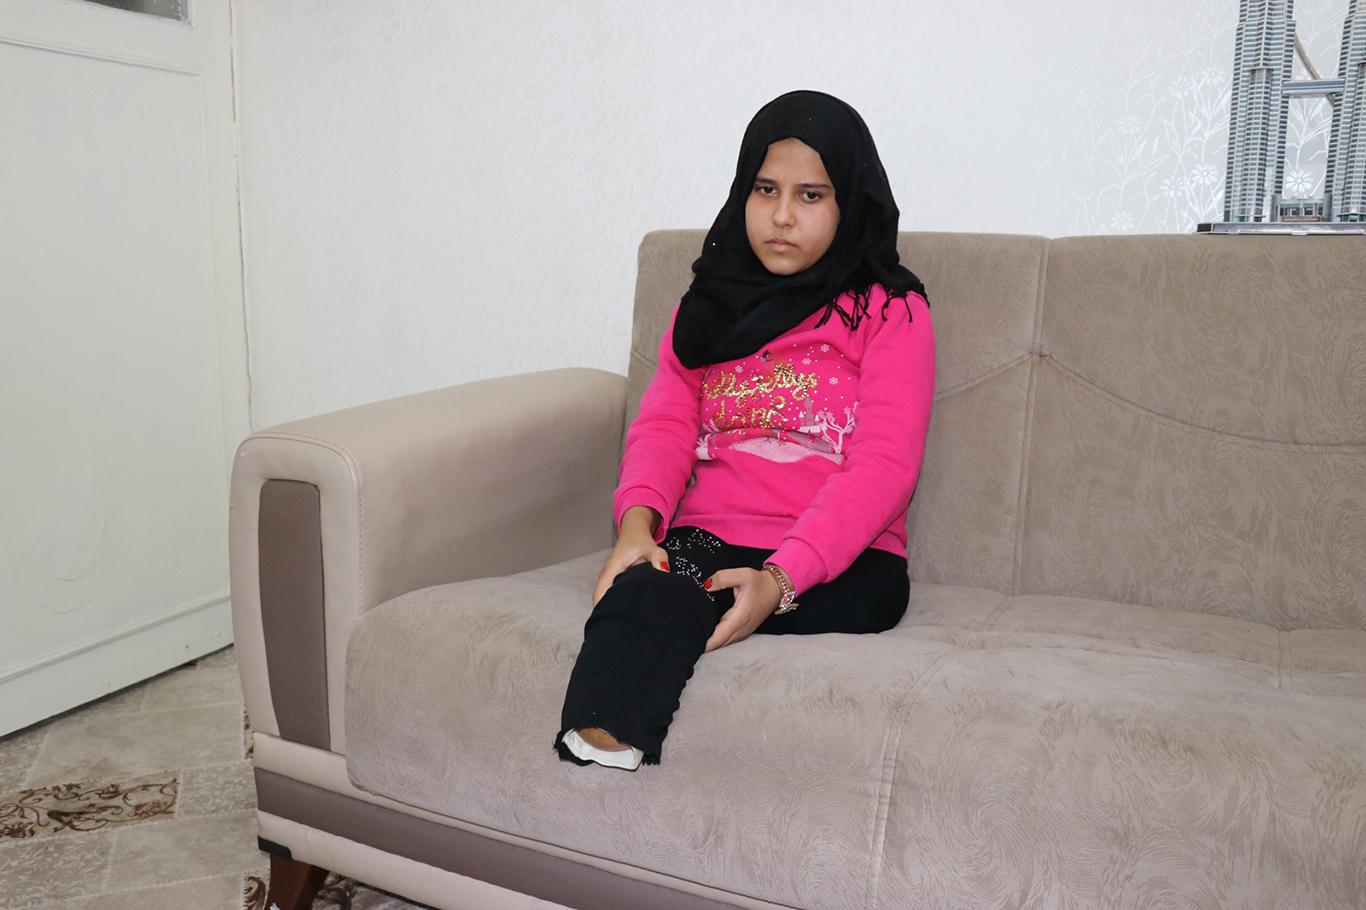 Suriyeli Meryem’in tek isteği protez bacaklar